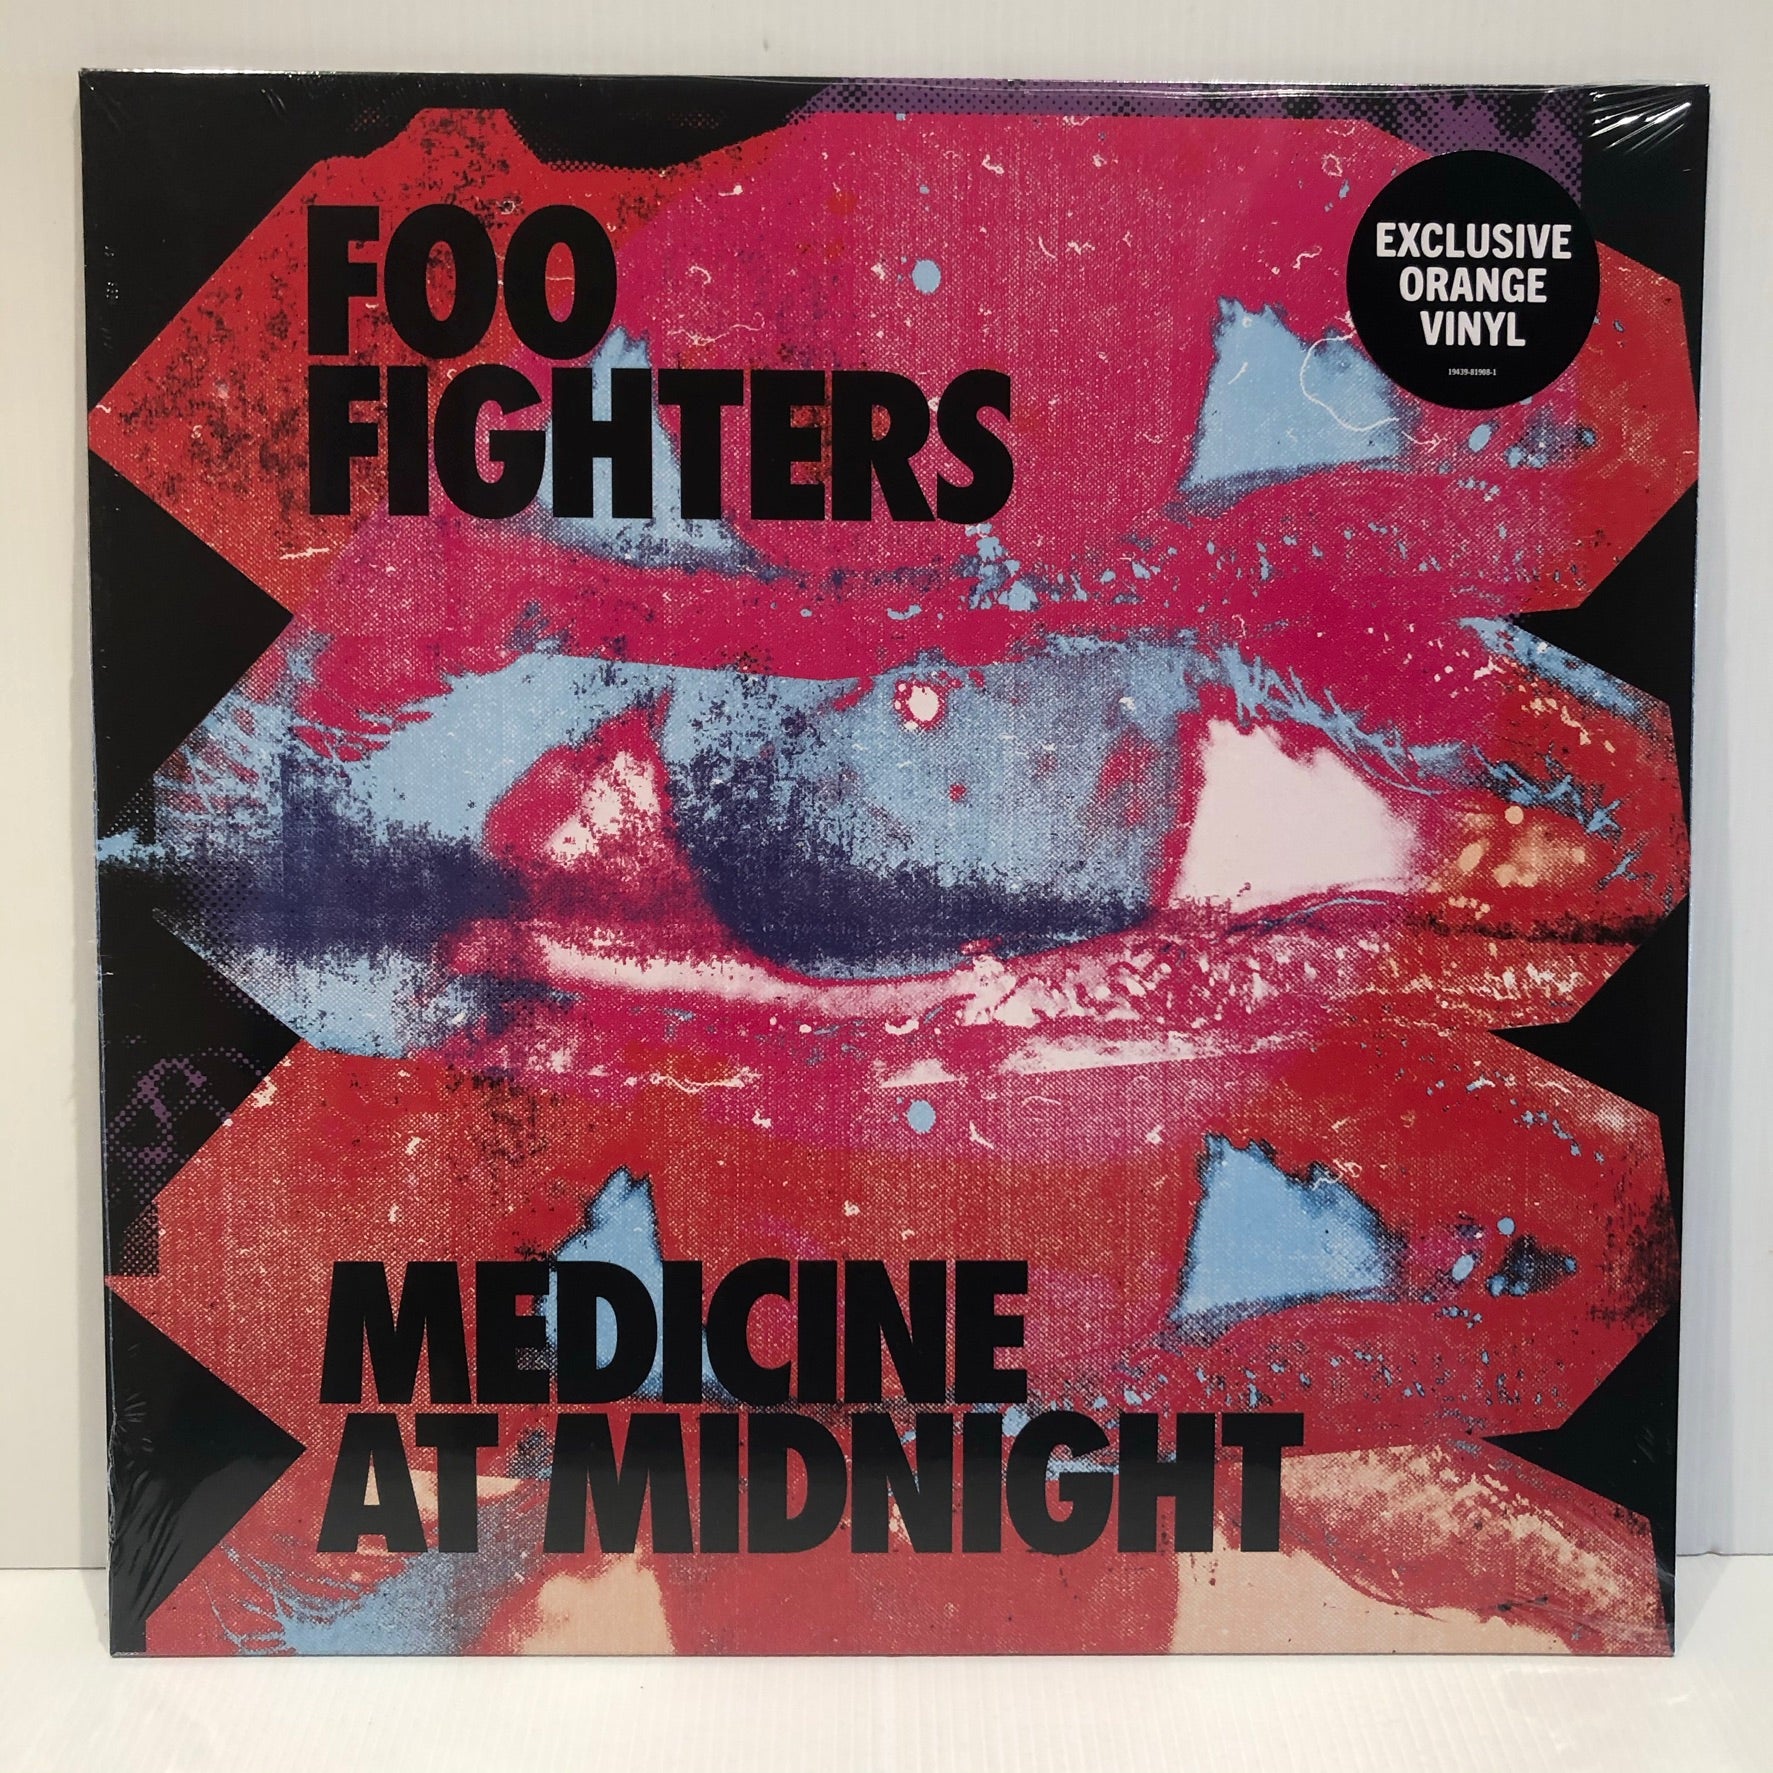 LP / Vinil - Foo Fighters - Foo Fighters